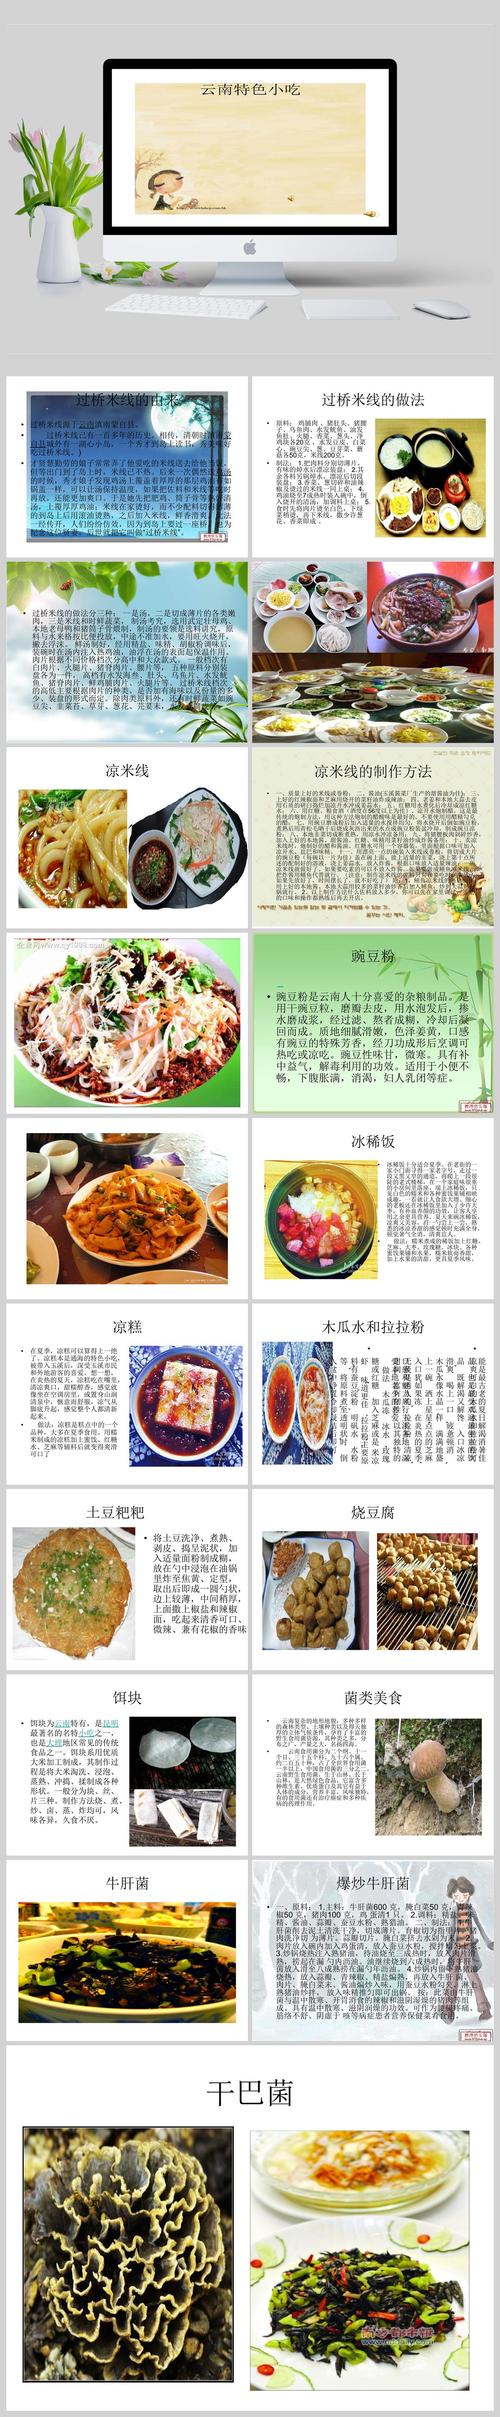 云南美食旅游文化介绍怎么写_云南的美食文化